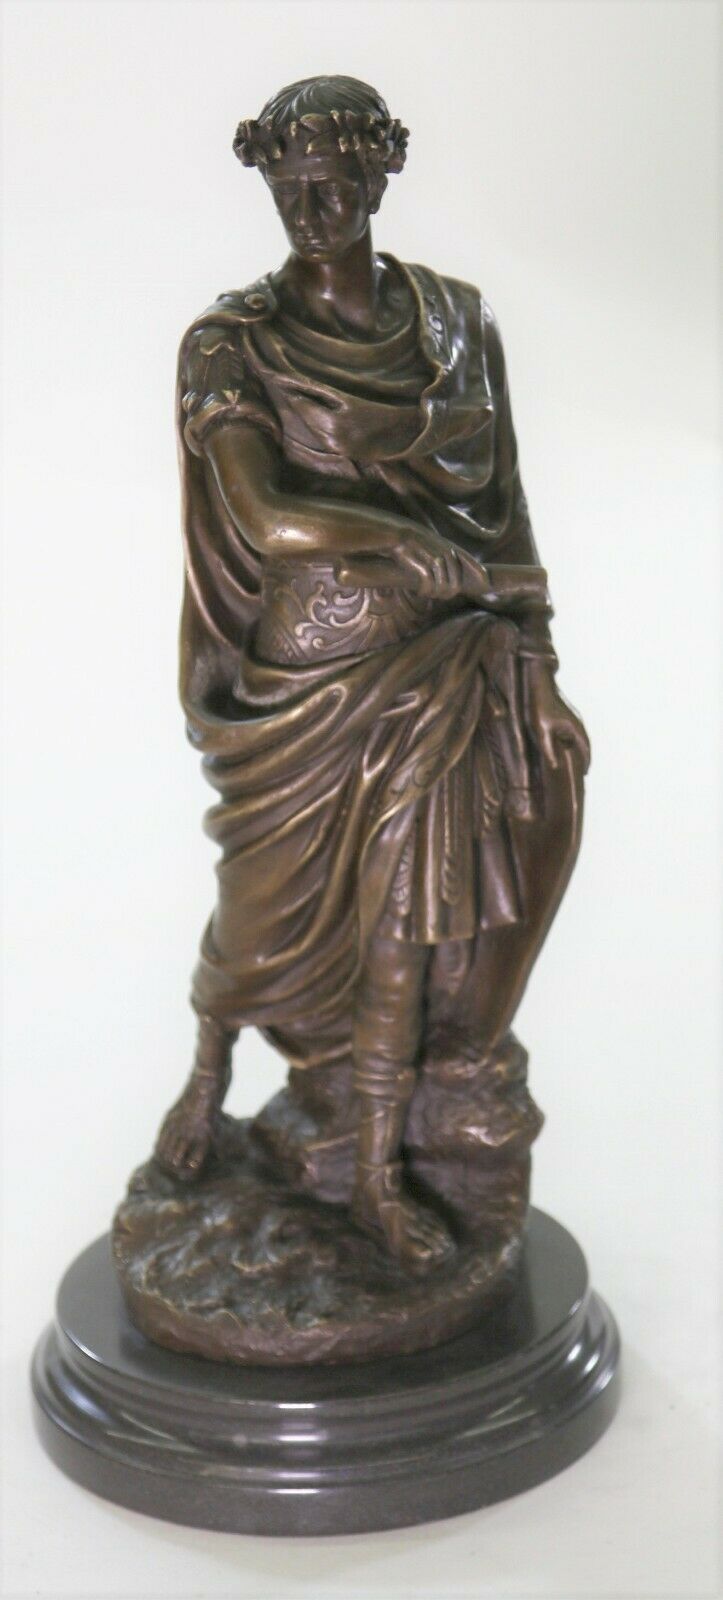 代购 凯撒大帝铜像手工制作蜡像雕塑青铜雕像客厅摆件装饰古董